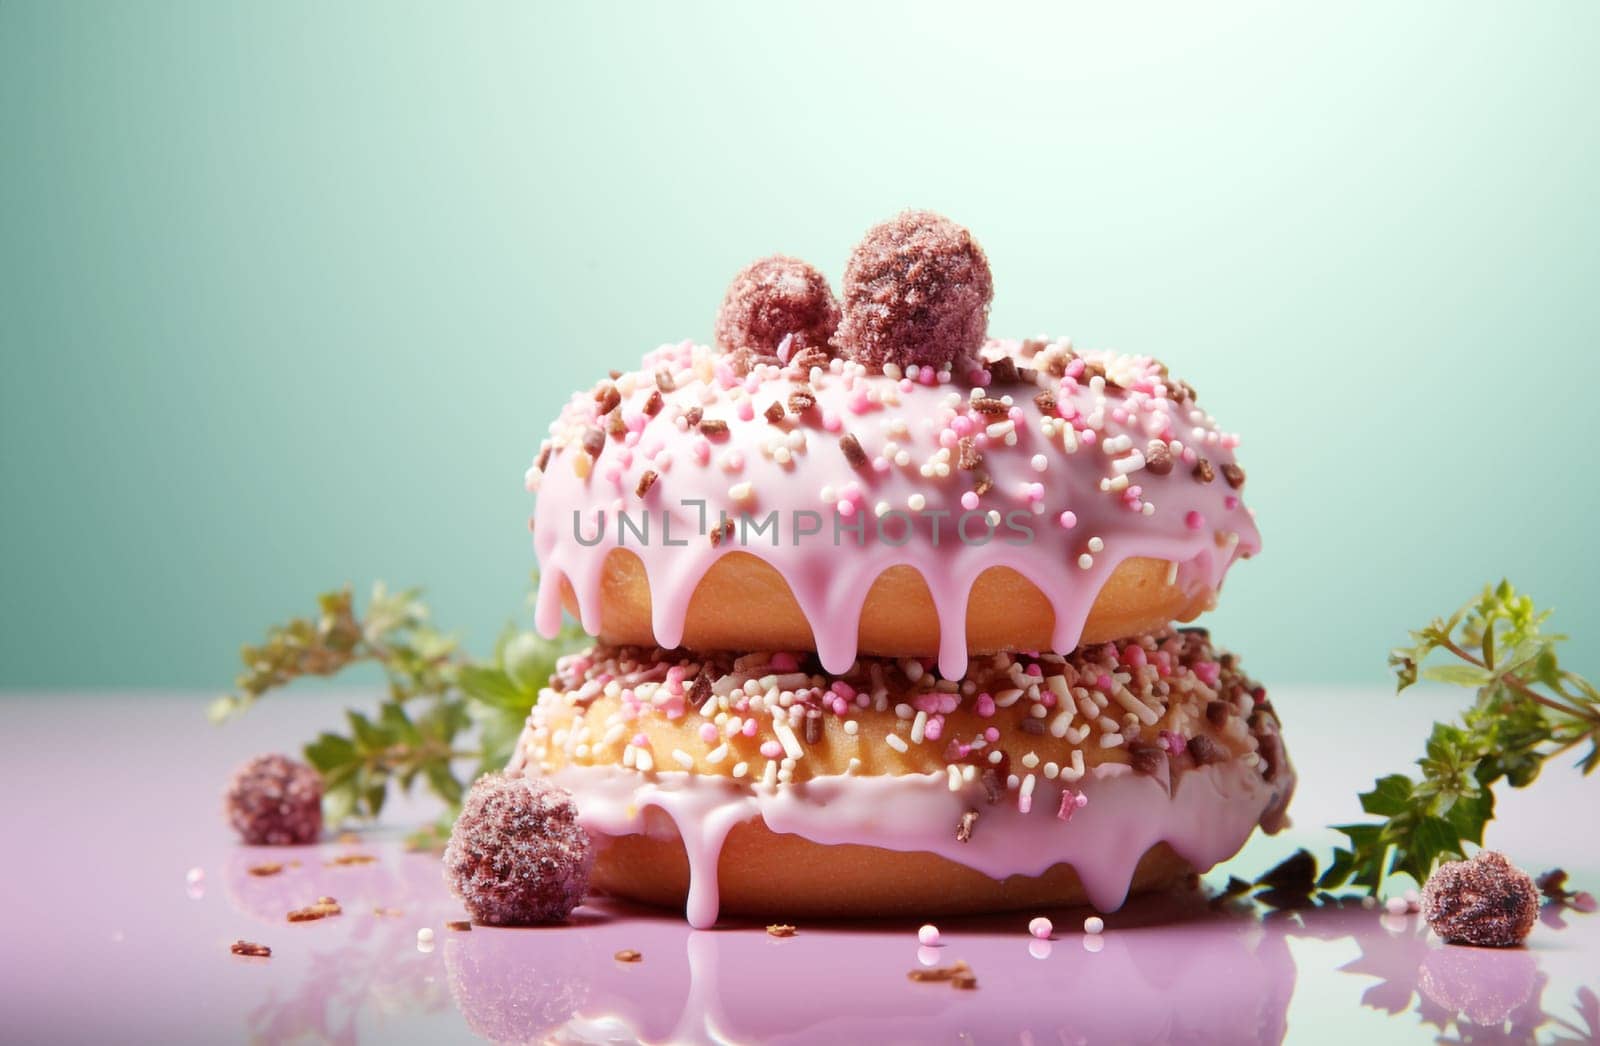 Sweet strawberry glazed donuts with sprinkles by Ciorba